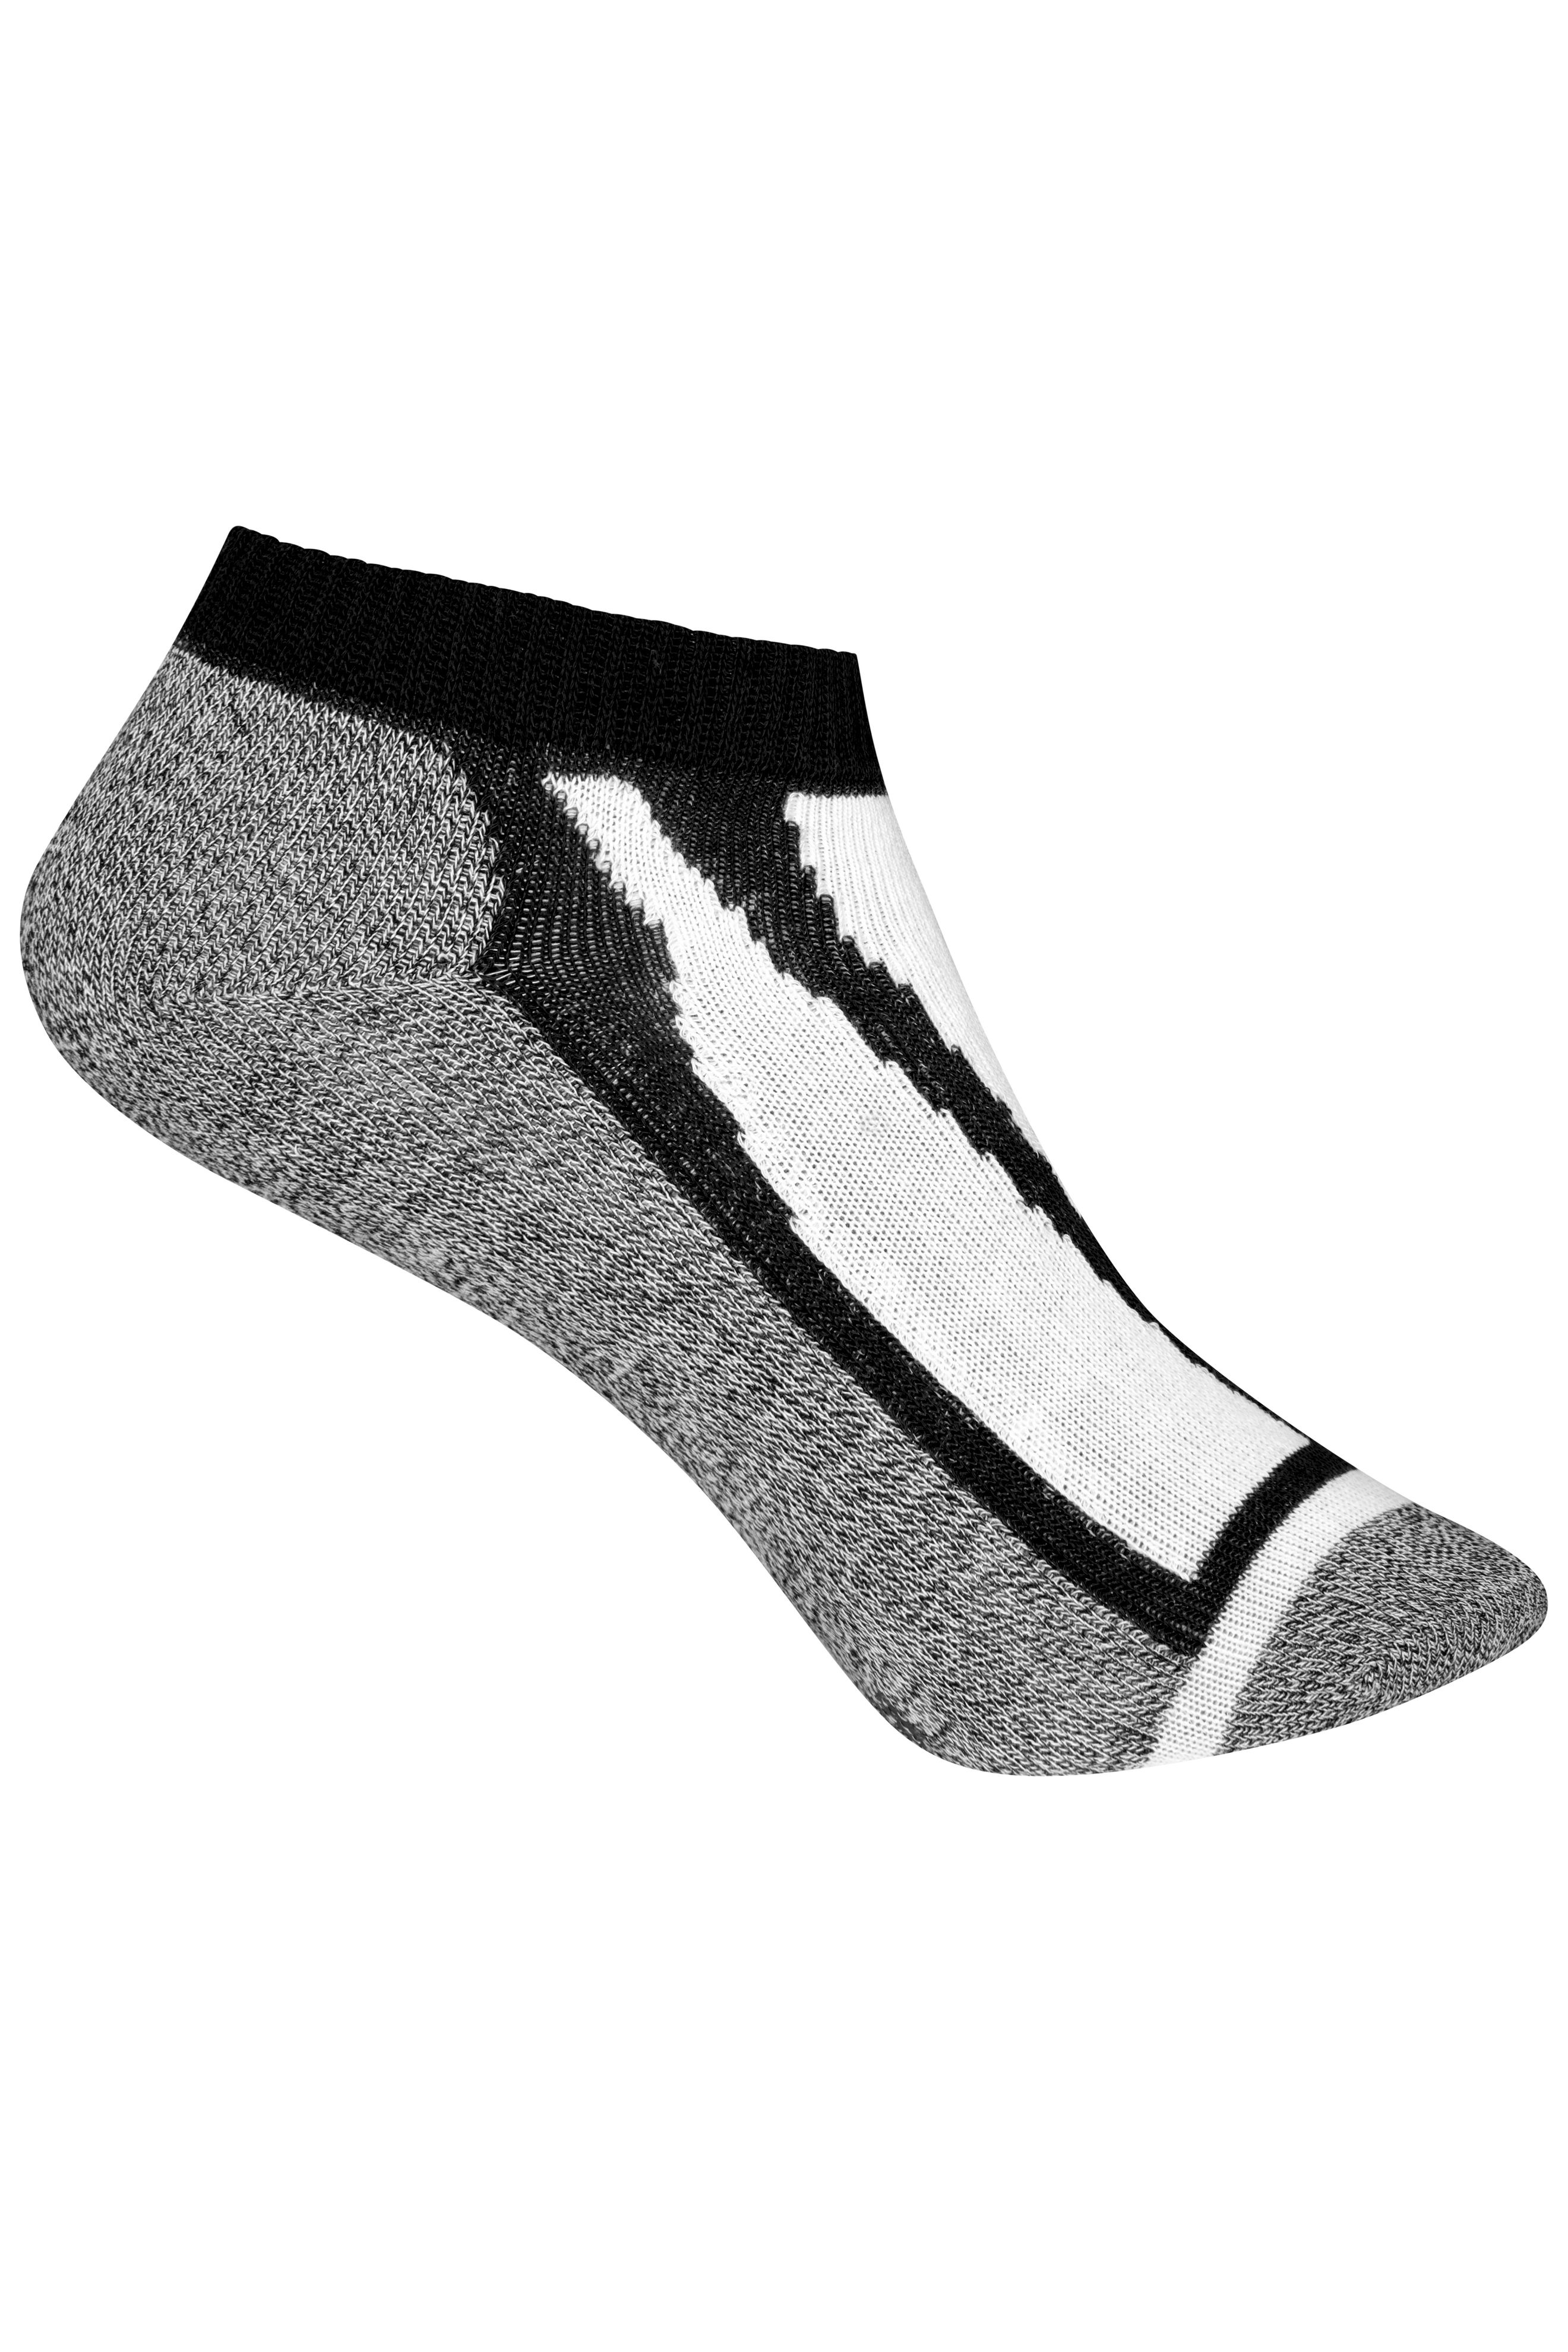 Unisex Sneaker Socks Black-Daiber